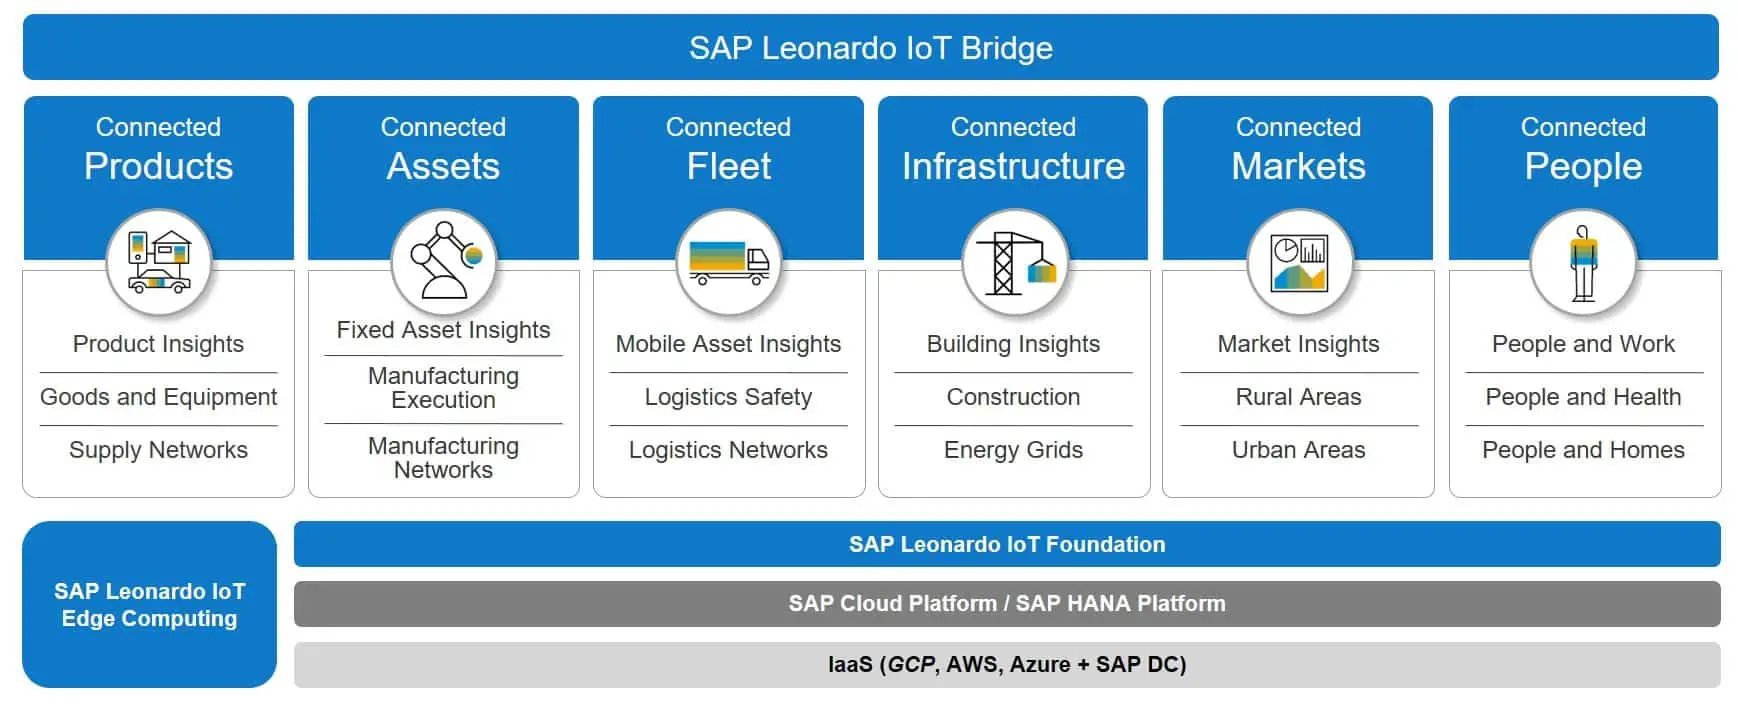 SAP Leonardo Internet of Things